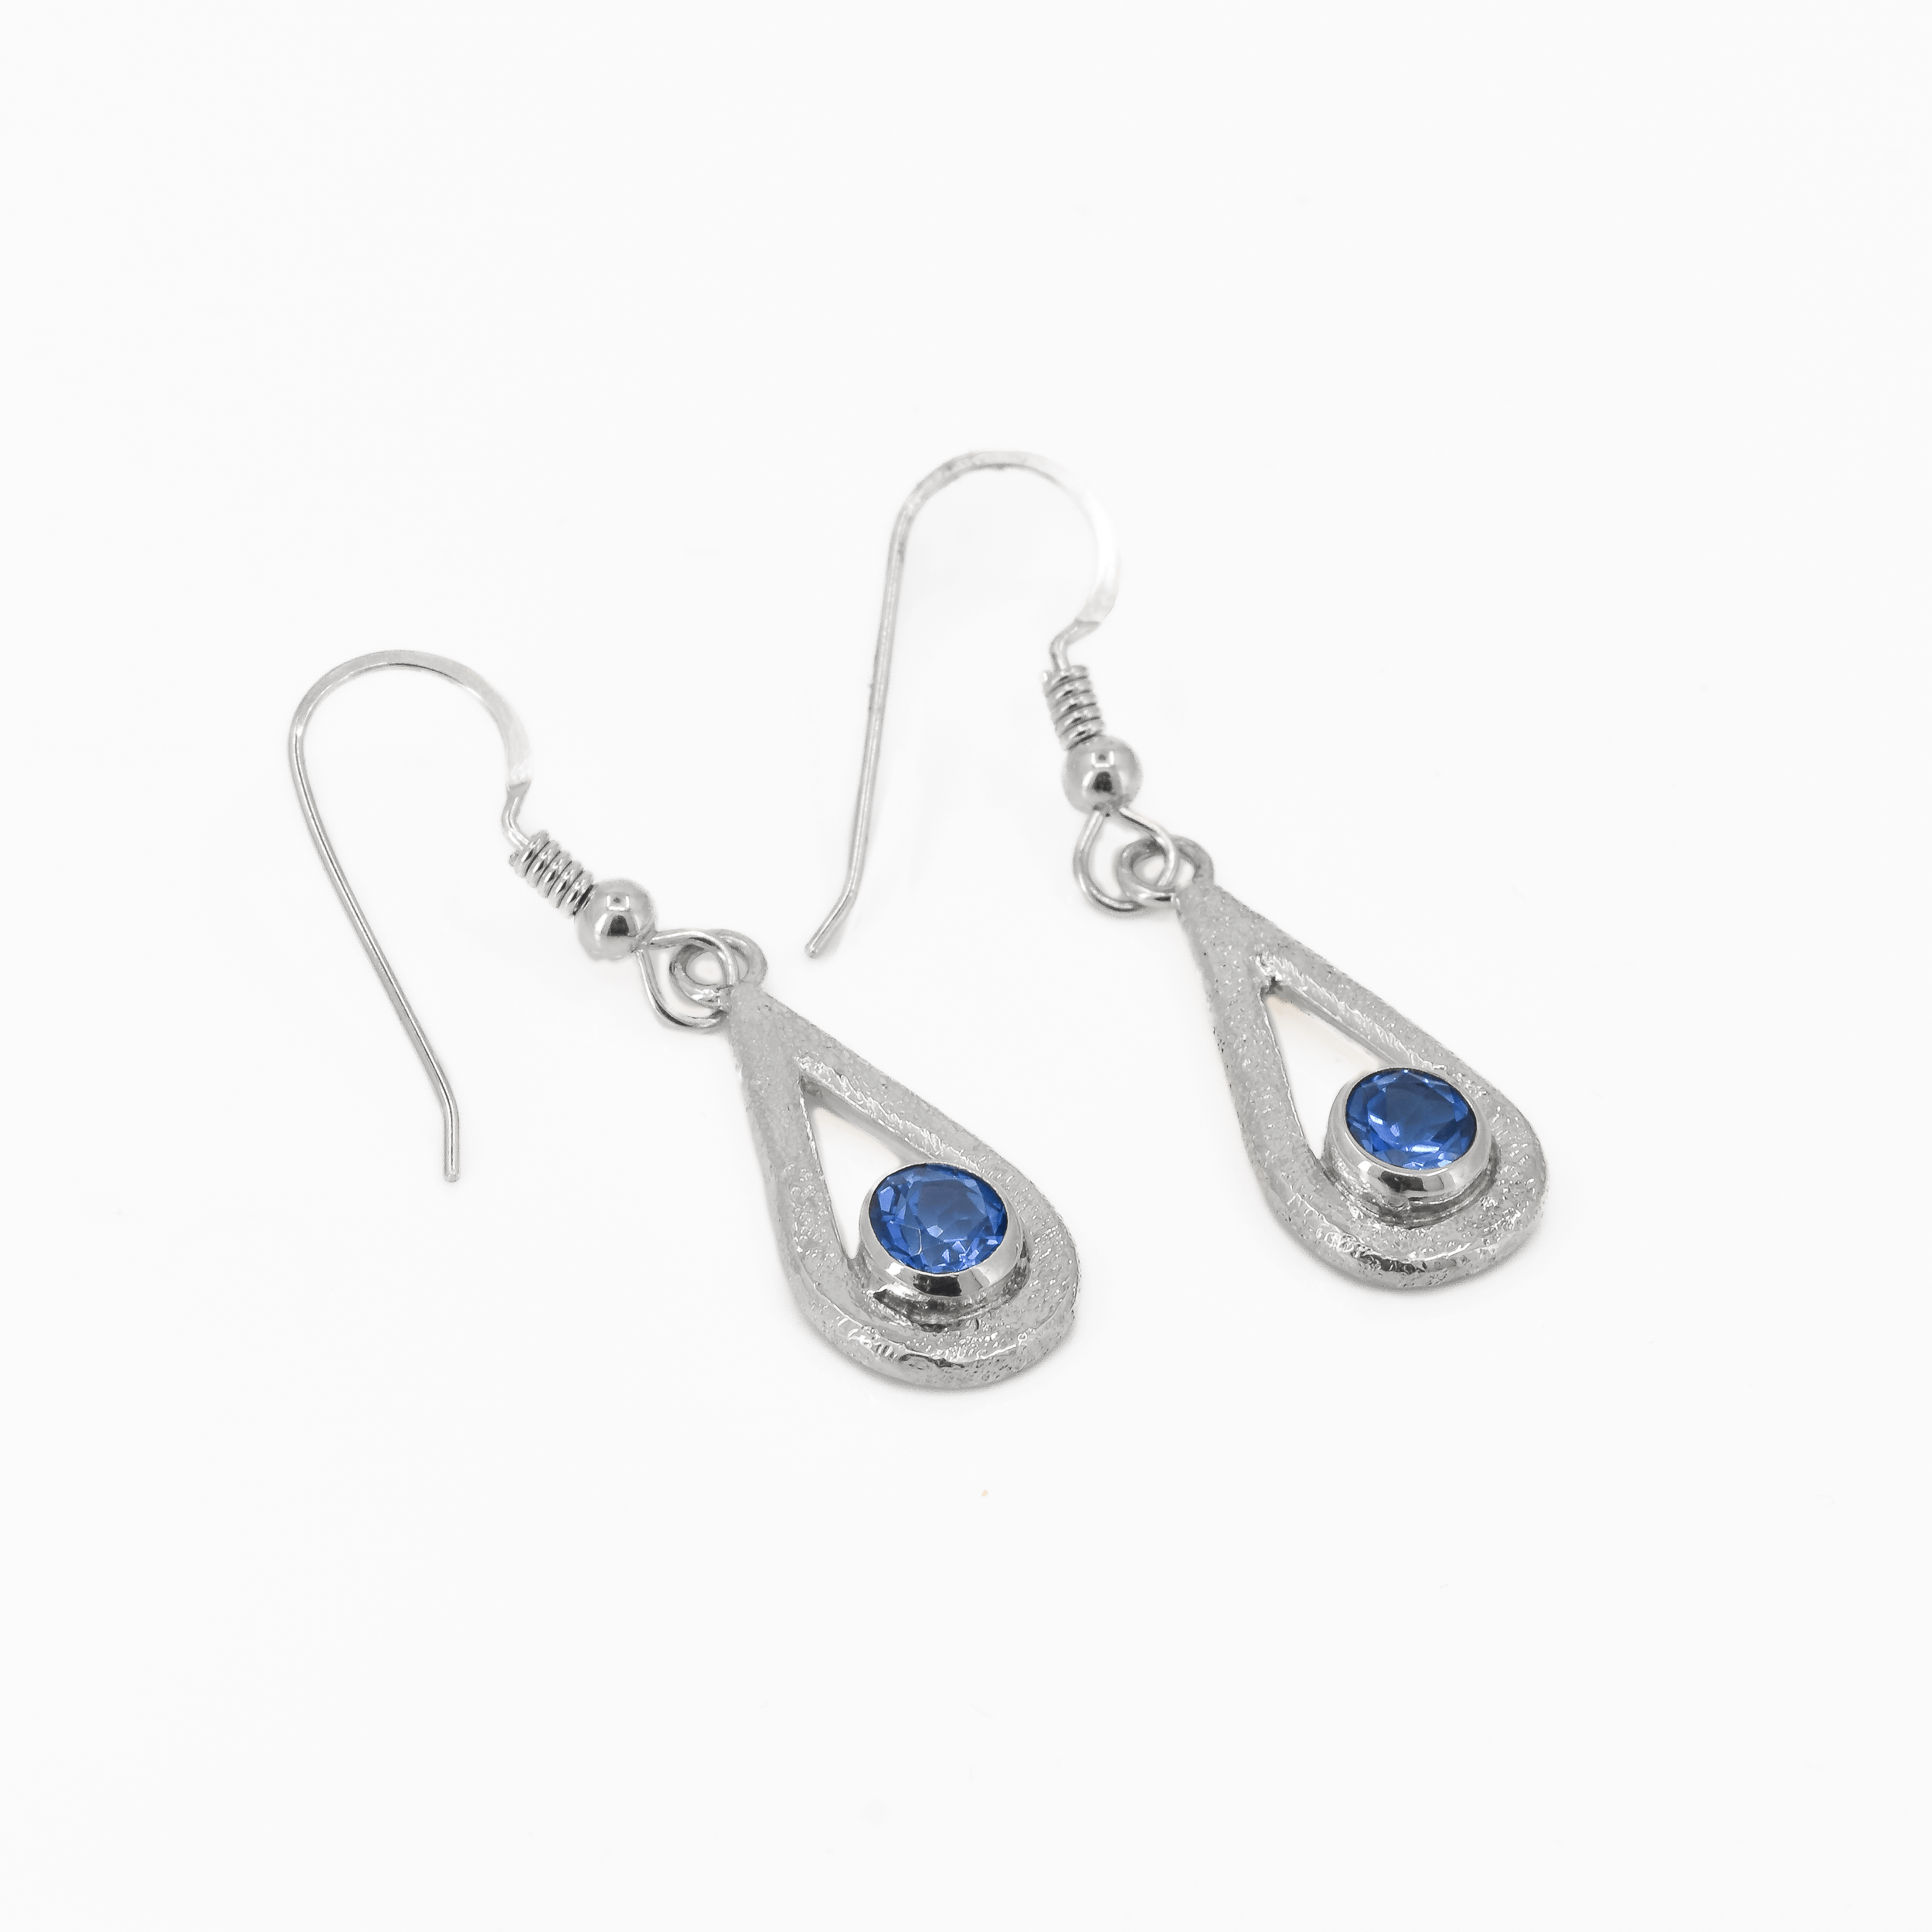 Ice Blue topaz teardrop shaped dangle earrings in sterling silver, featuring a stardust texture.